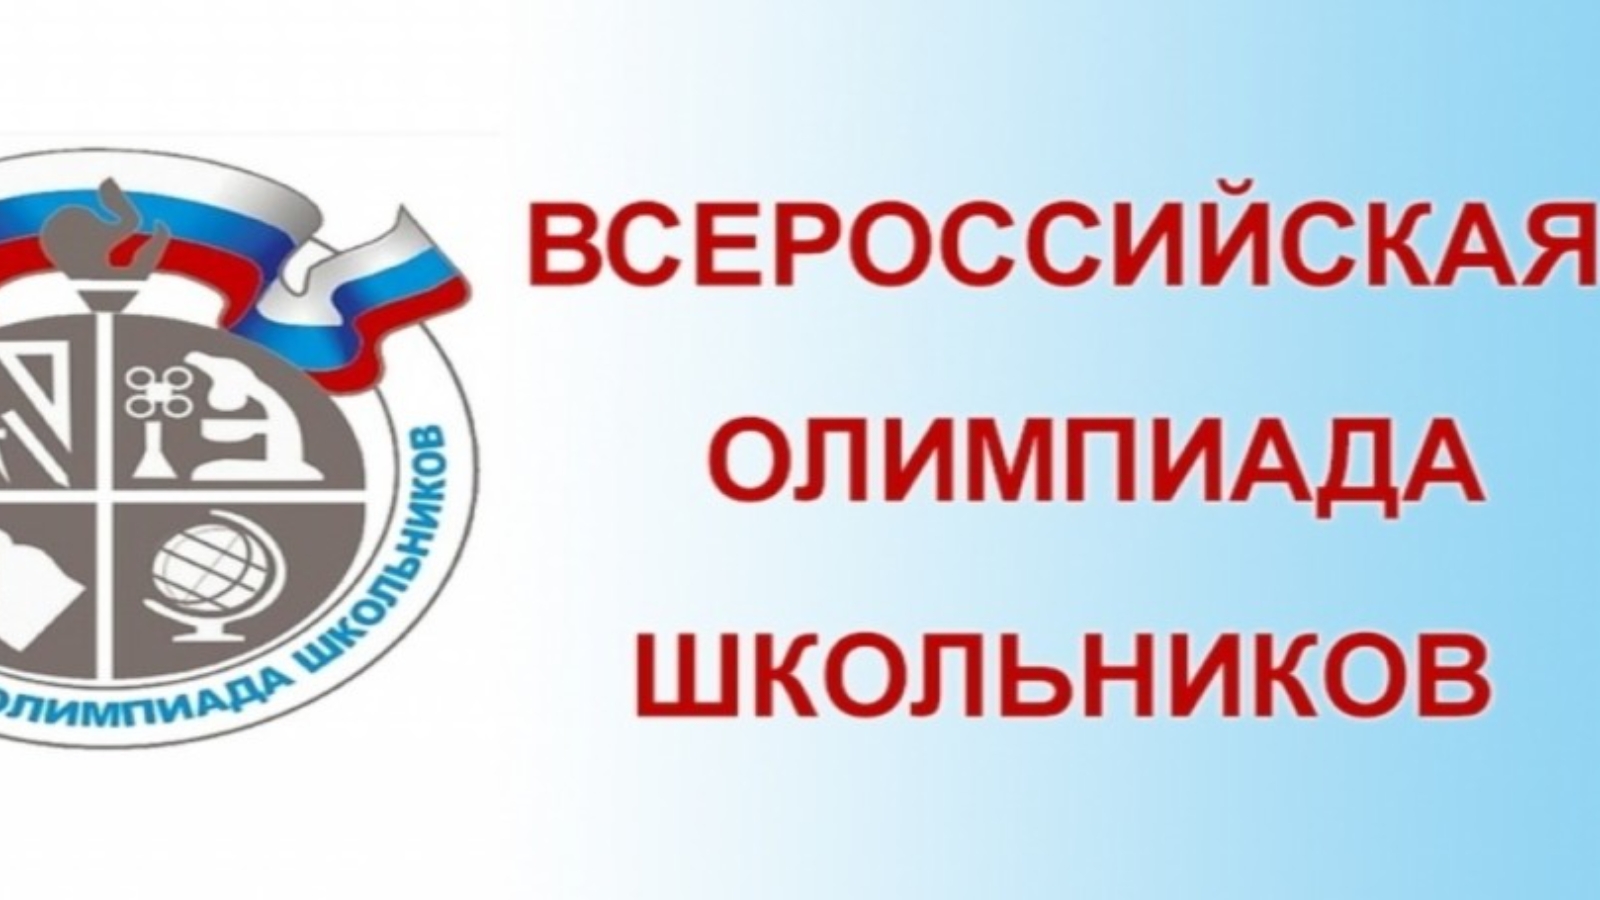 Приказ председателя комитета по образованию администрации муниципального образования «Город Саратов» от 3 ноября 2022 года № 529.